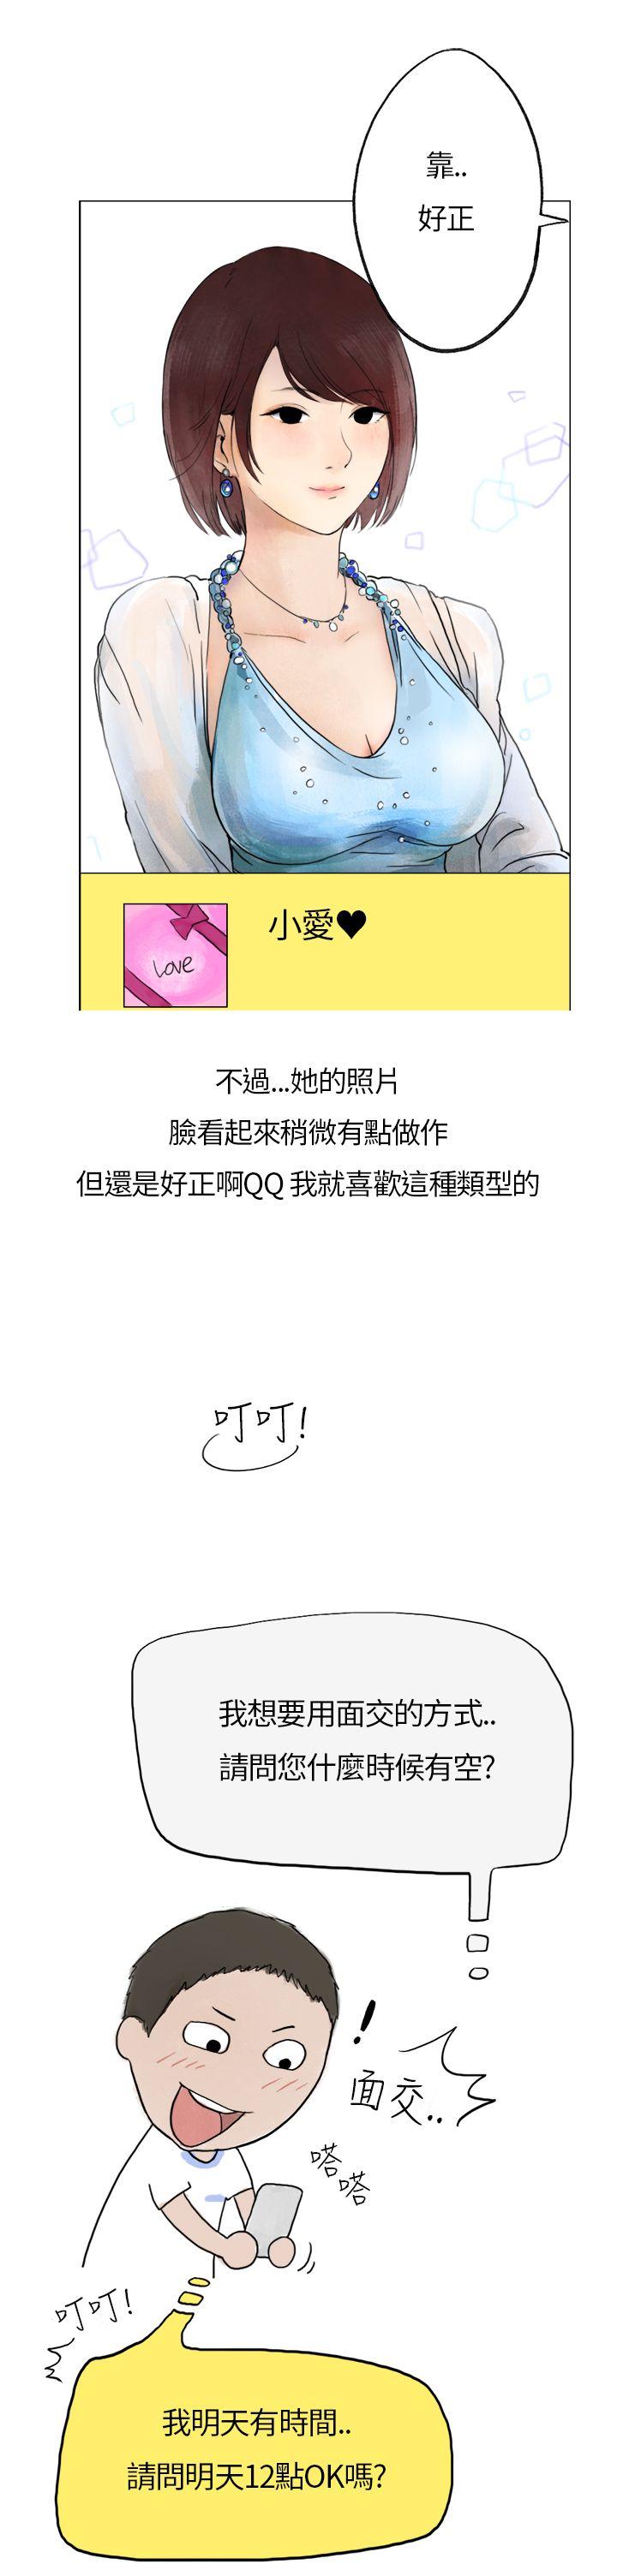 韩国污漫画 秘密Story第二季 在拍卖网站上认识的女人(上) 12